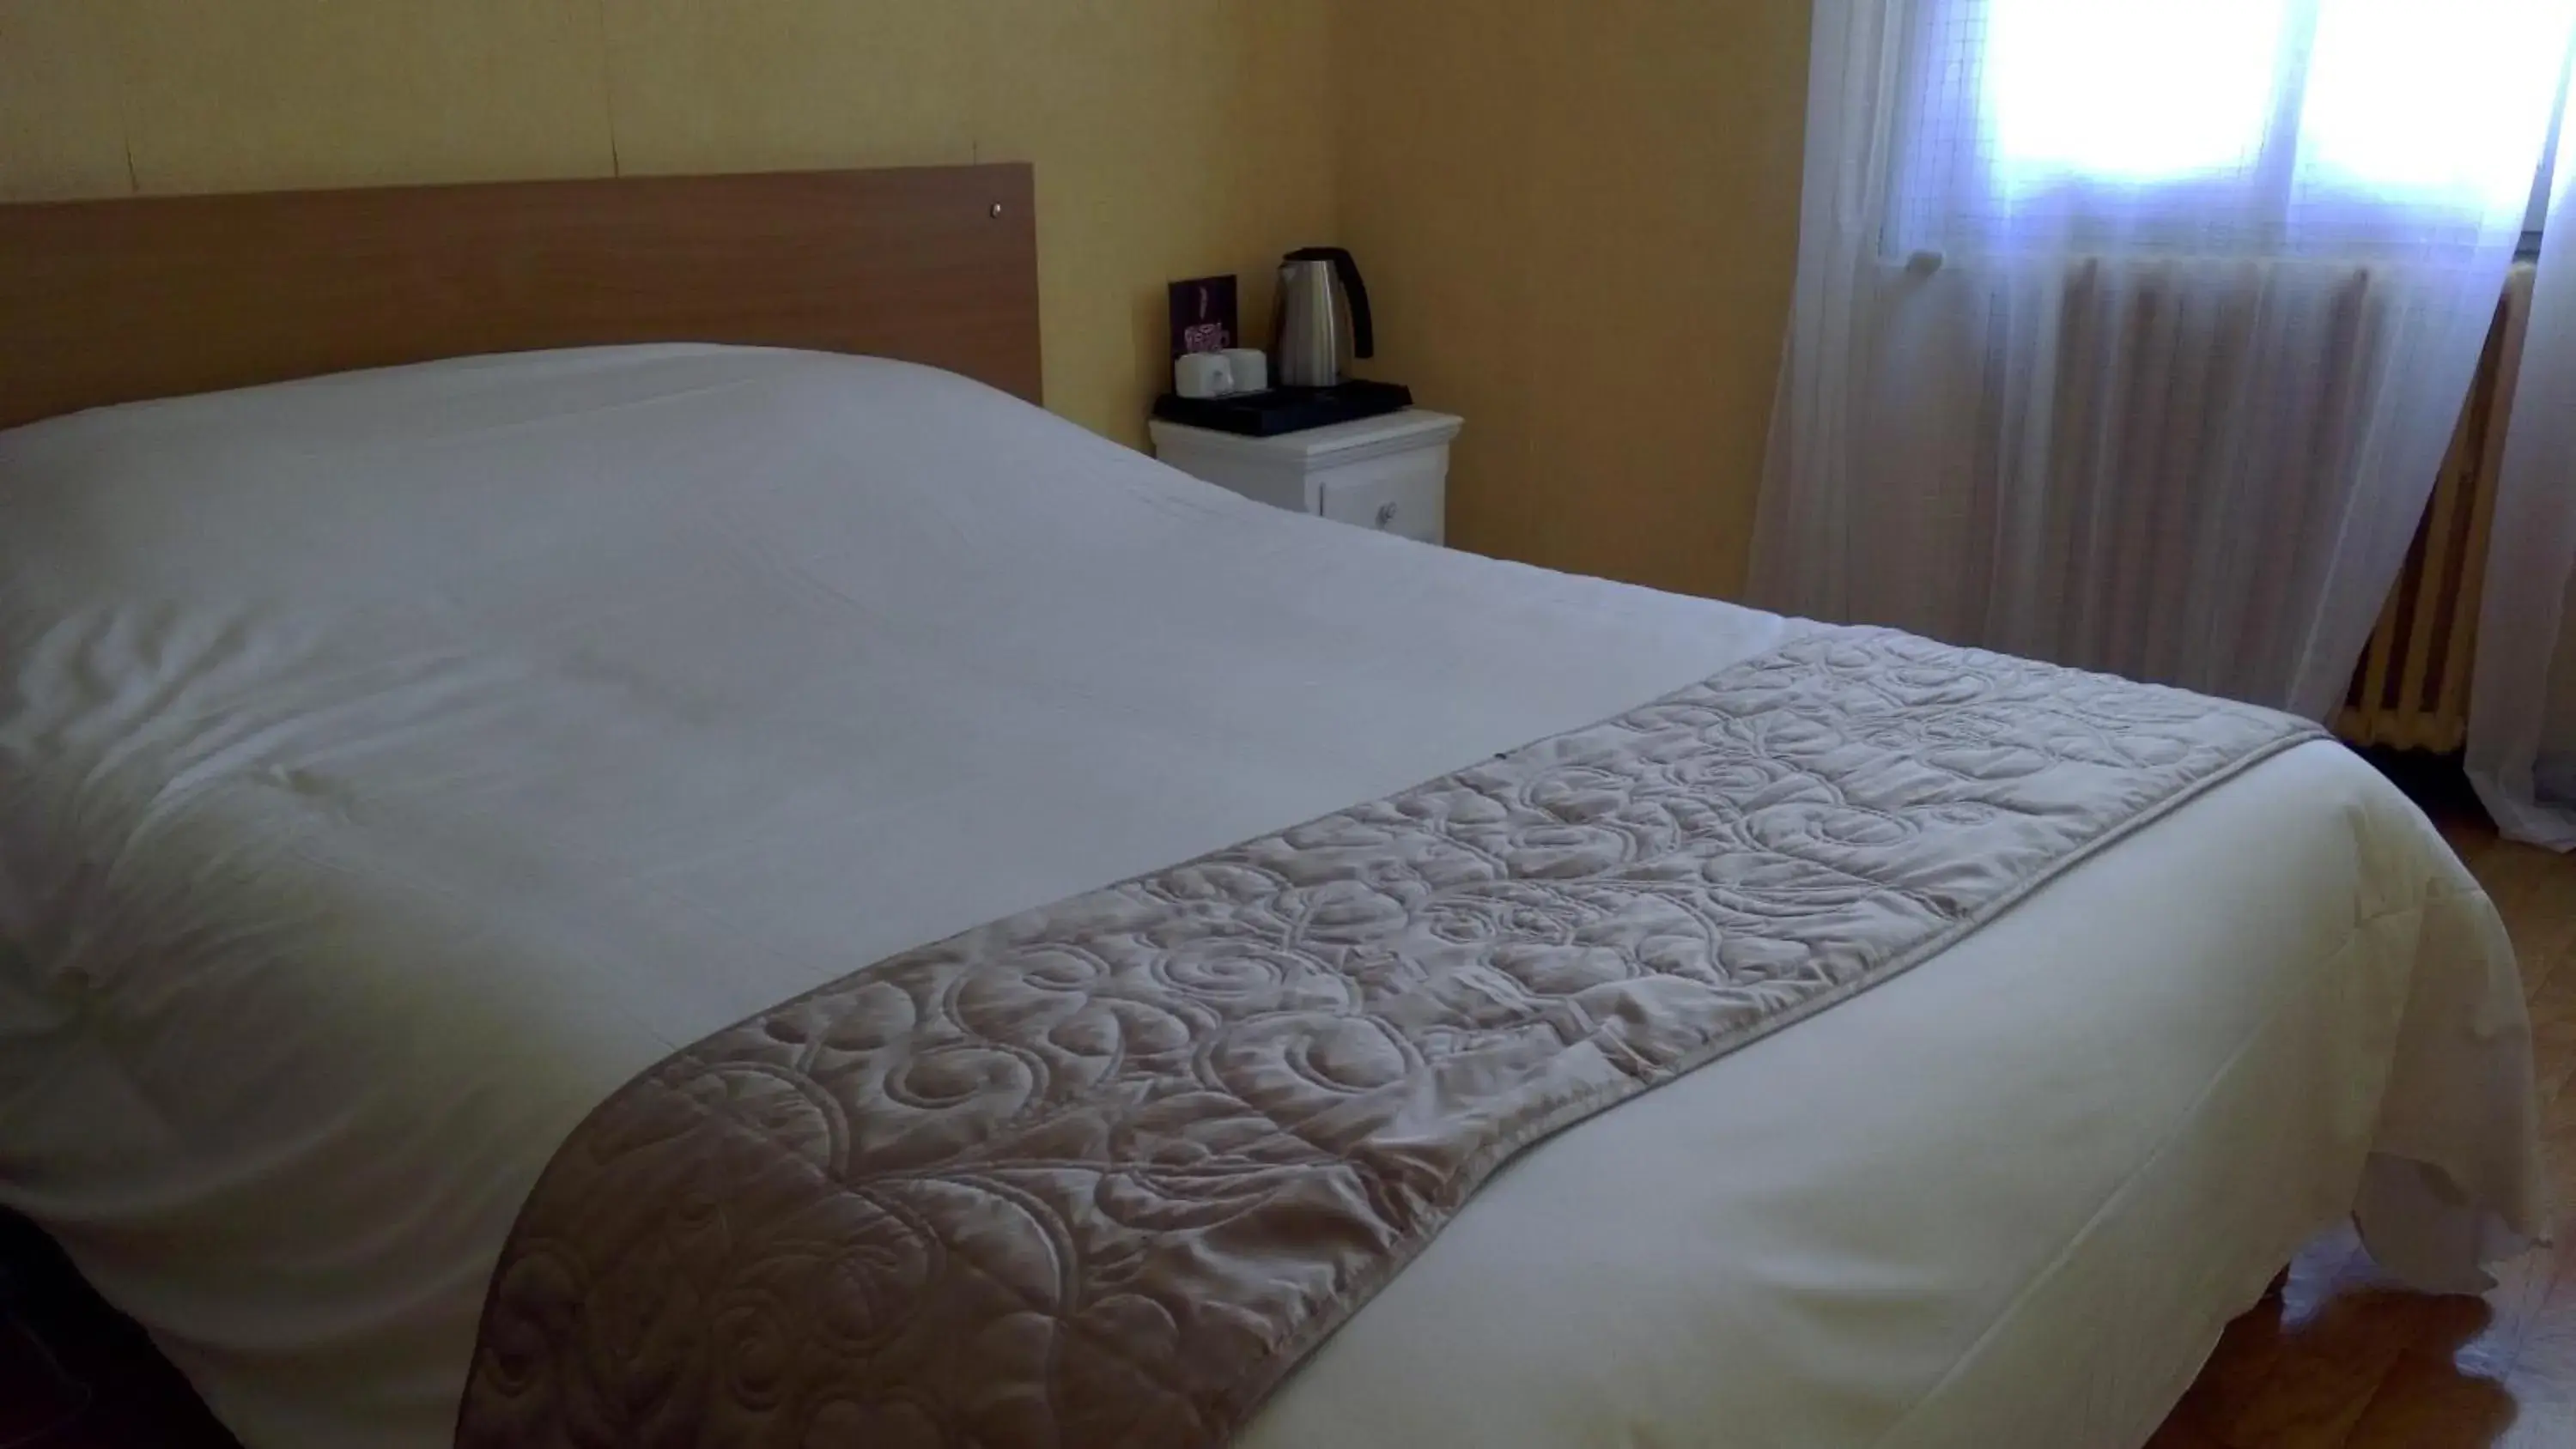 Bed, Room Photo in Hotel De La Bastide